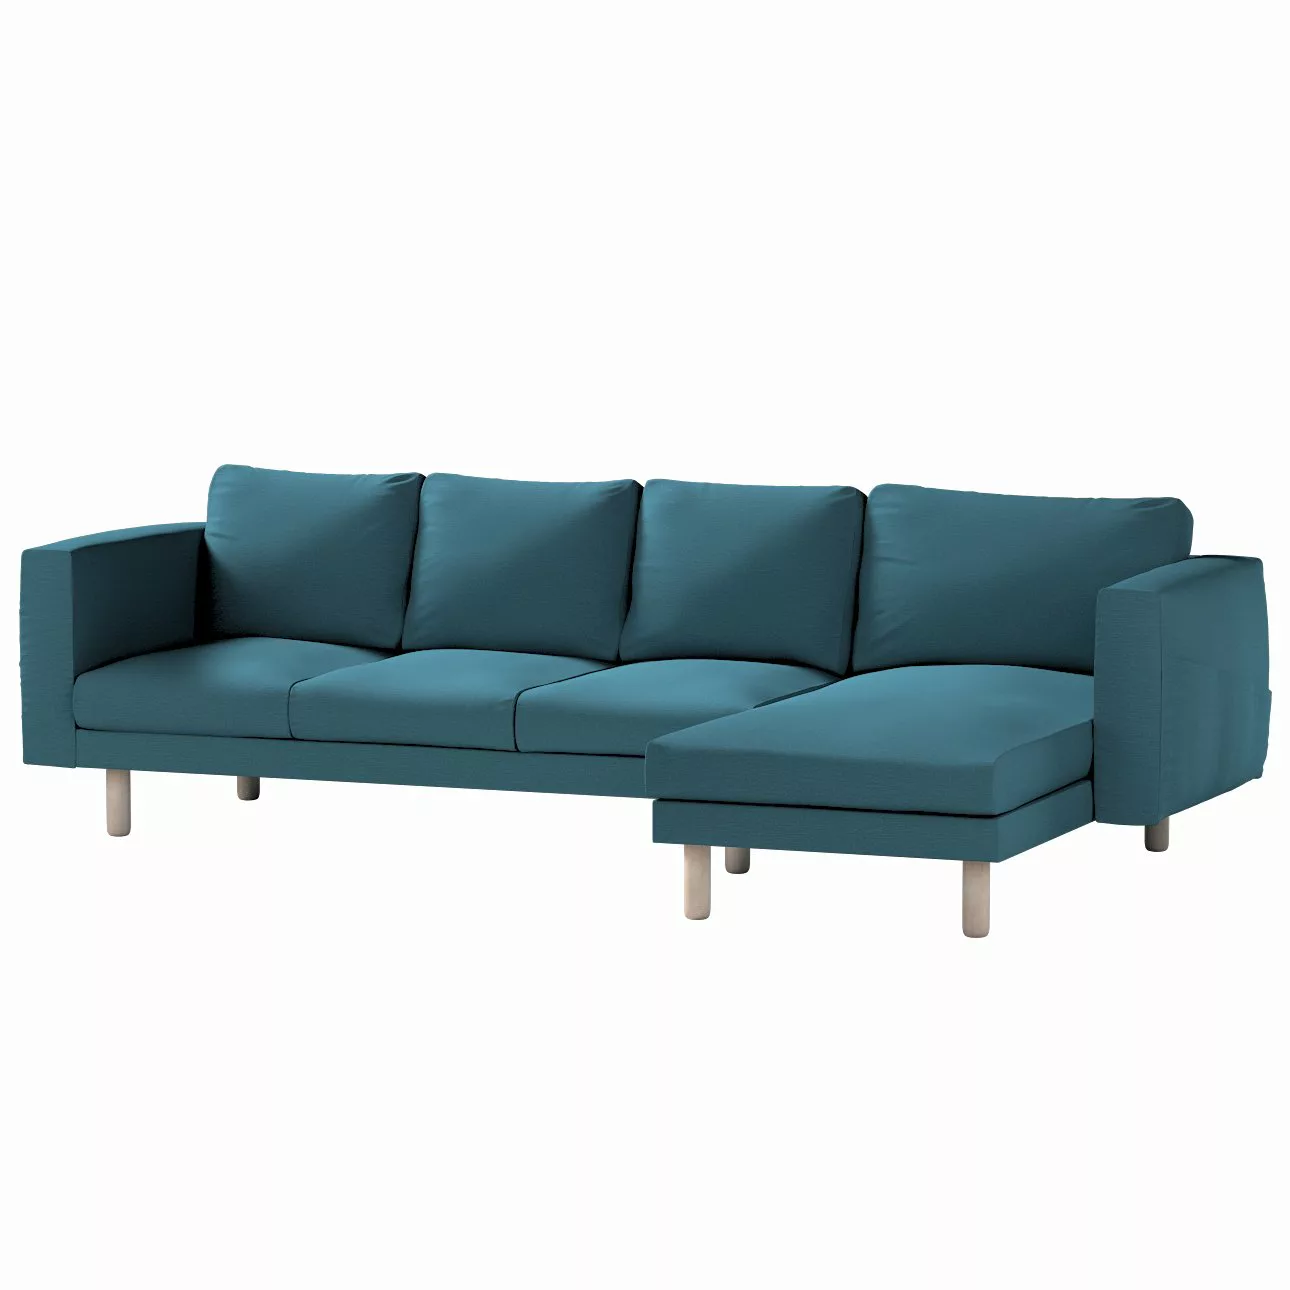 Bezug für Norsborg 4-Sitzer Sofa mit Recamiere, dunkelblau, Norsborg Bezug günstig online kaufen